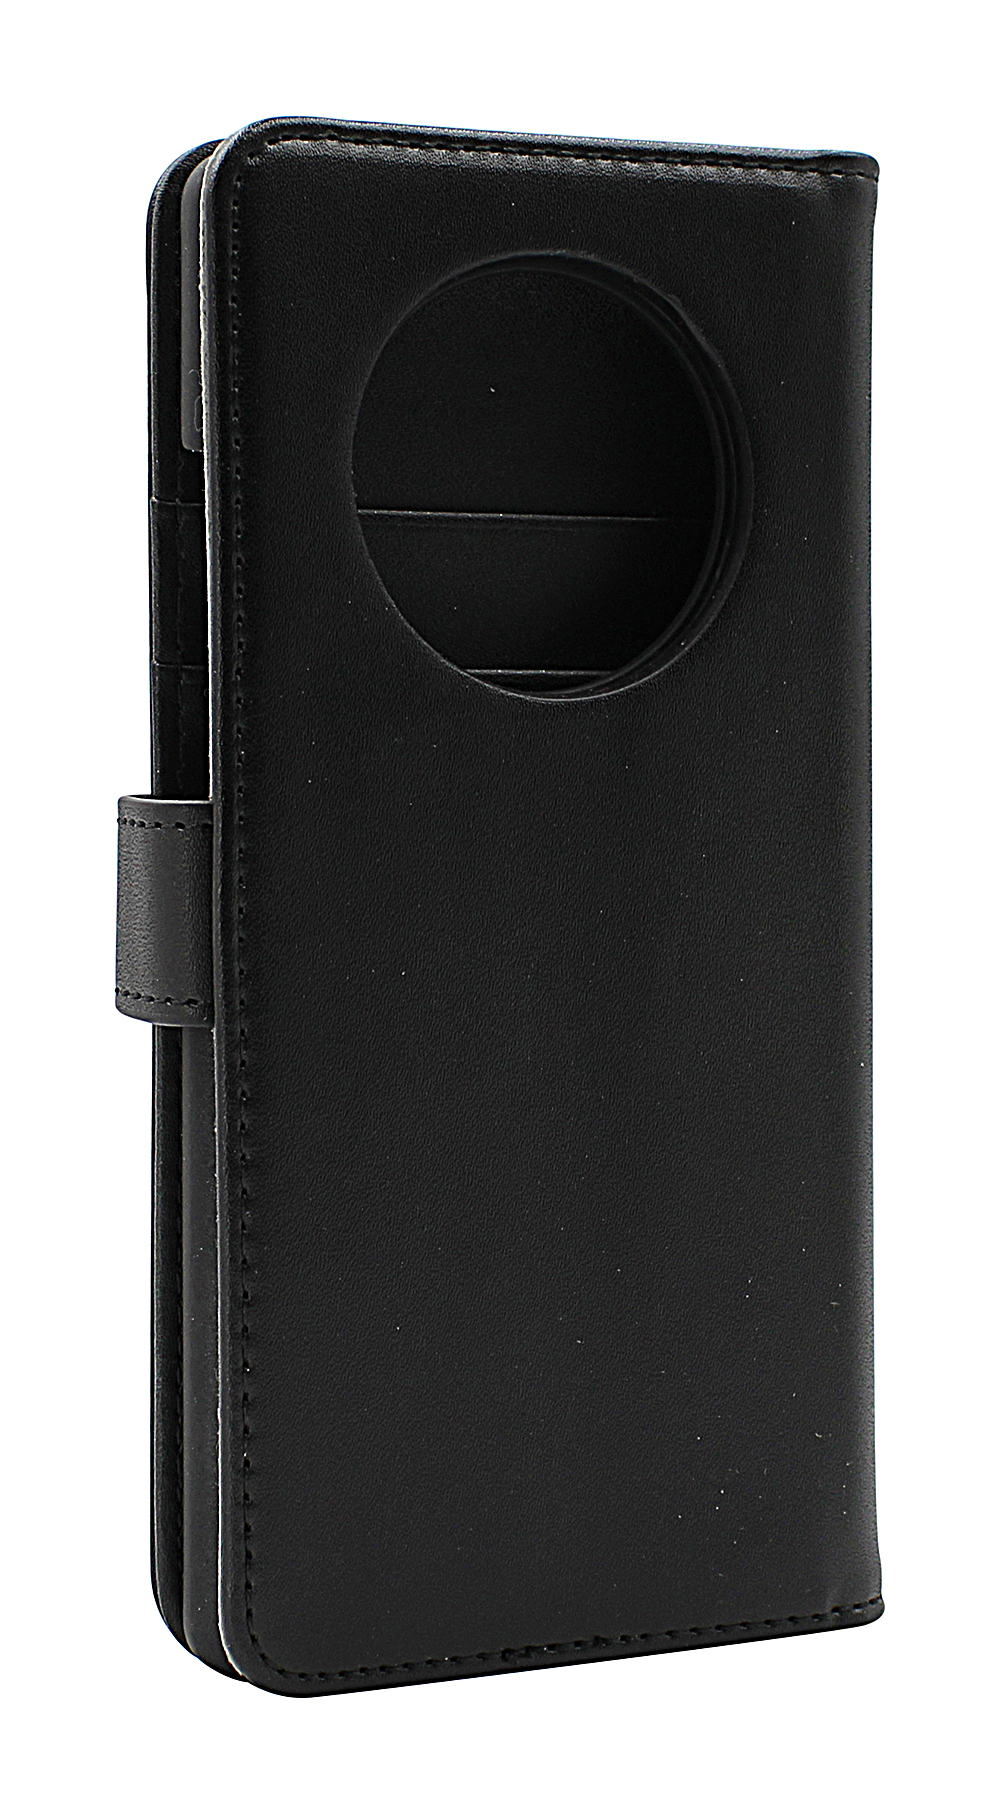 Skimblocker Magnet Wallet Huawei Mate 40 Pro